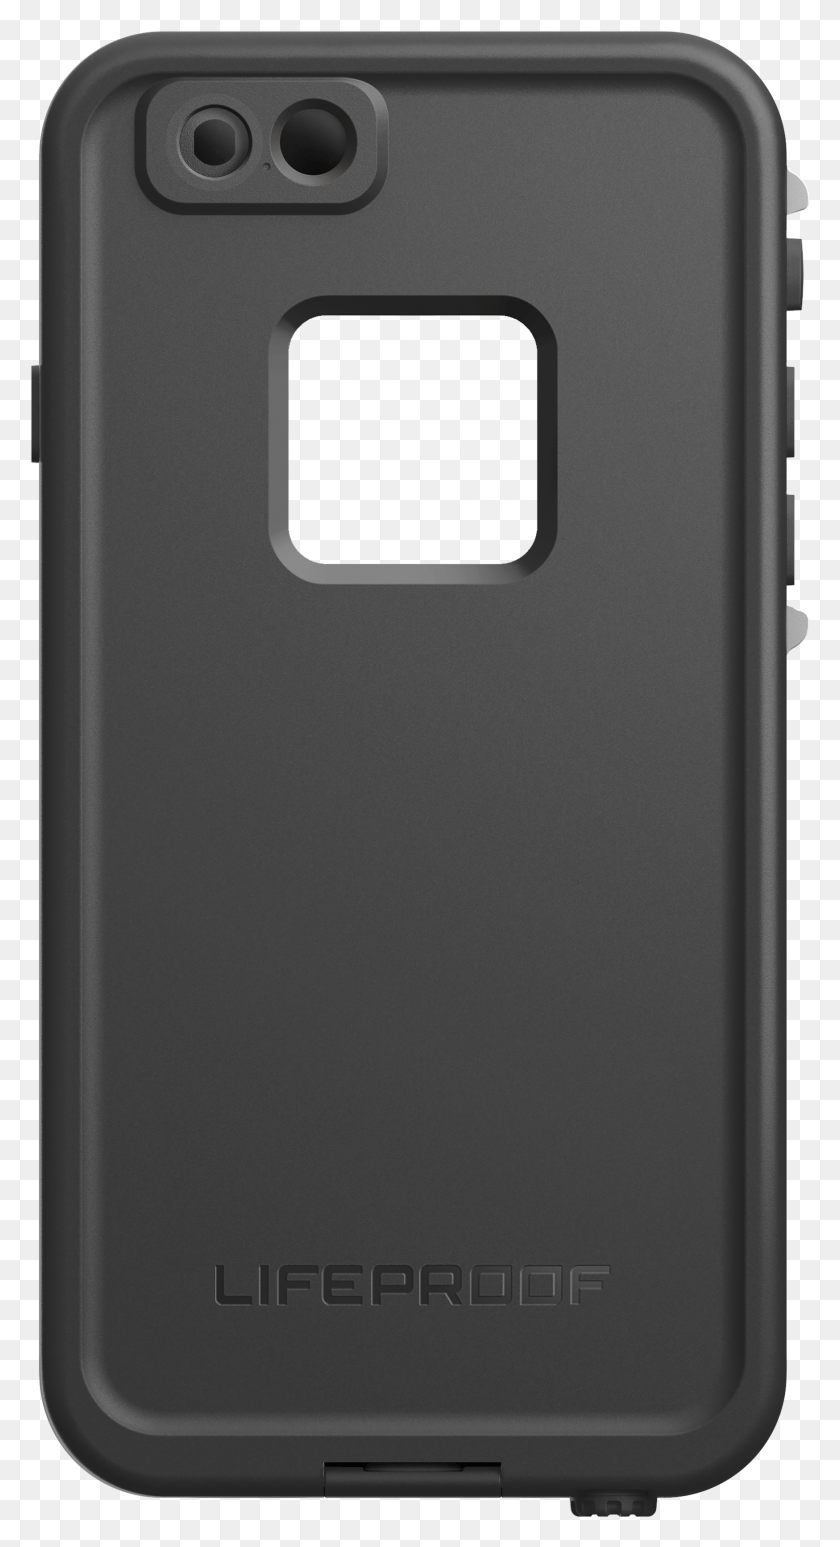 1748x3333 Image Black And White Clip Cases Прозрачный Lifeproof Case Для Iphone 6S, Мобильный Телефон, Телефон, Электроника Hd Png Загружать